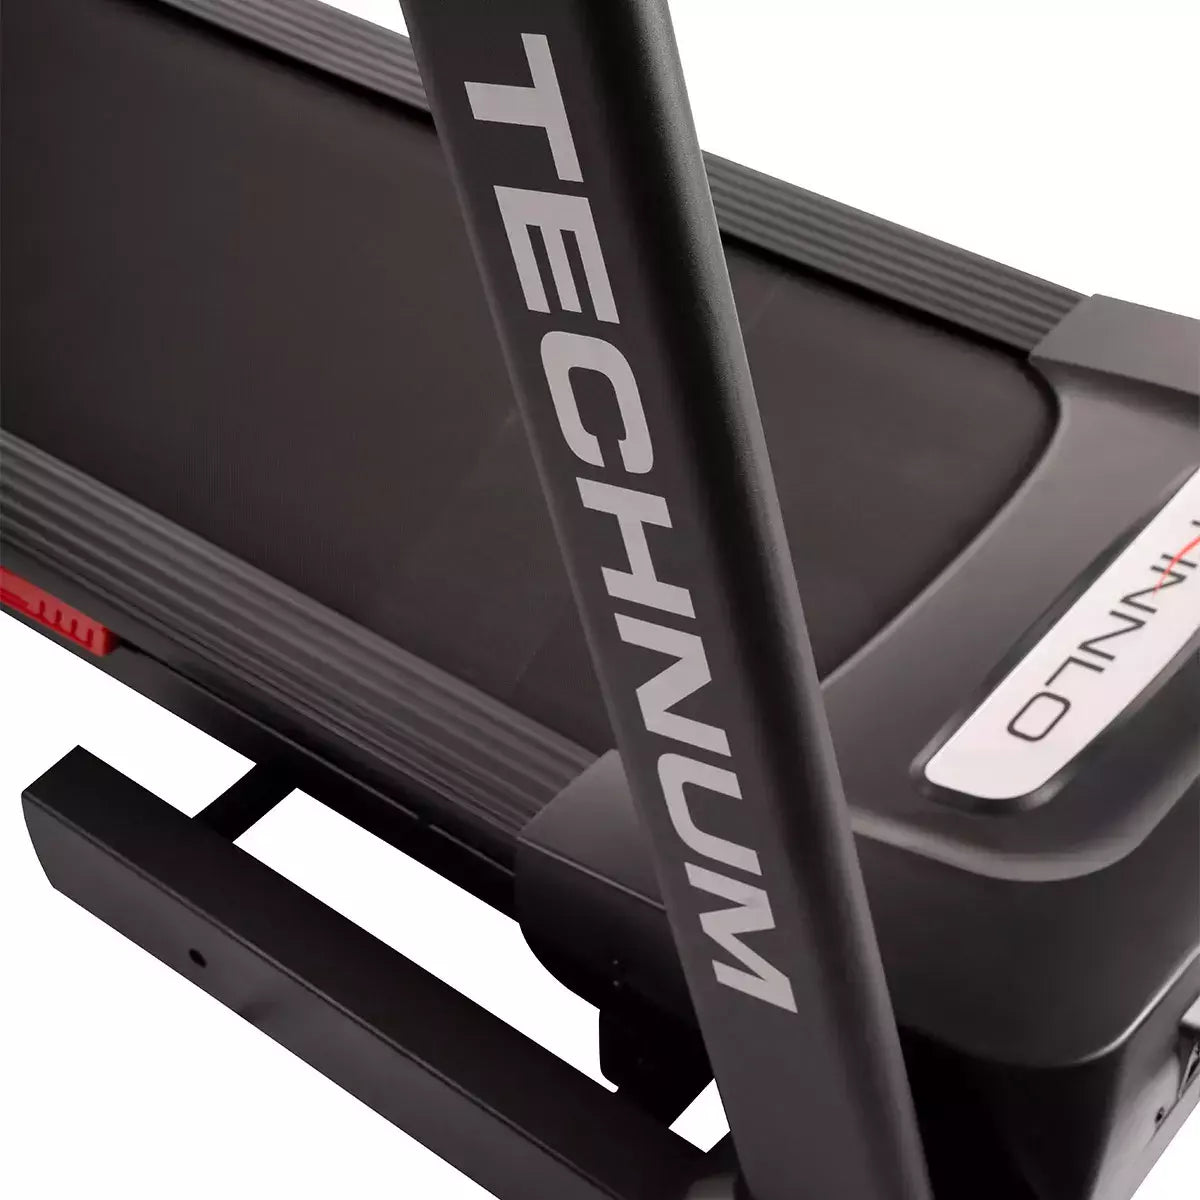 Tapis Roulant Technum V Tecno 5.0 Treadmill Linea FINNLO by Hammer Velocità di allenamento fino a 20 km/h Utente 150 Kg. Piano Corsa 150 x 51 cm Inclinazione Elettrica cod. 3501 Tappeto Elett - TIMESPORT24